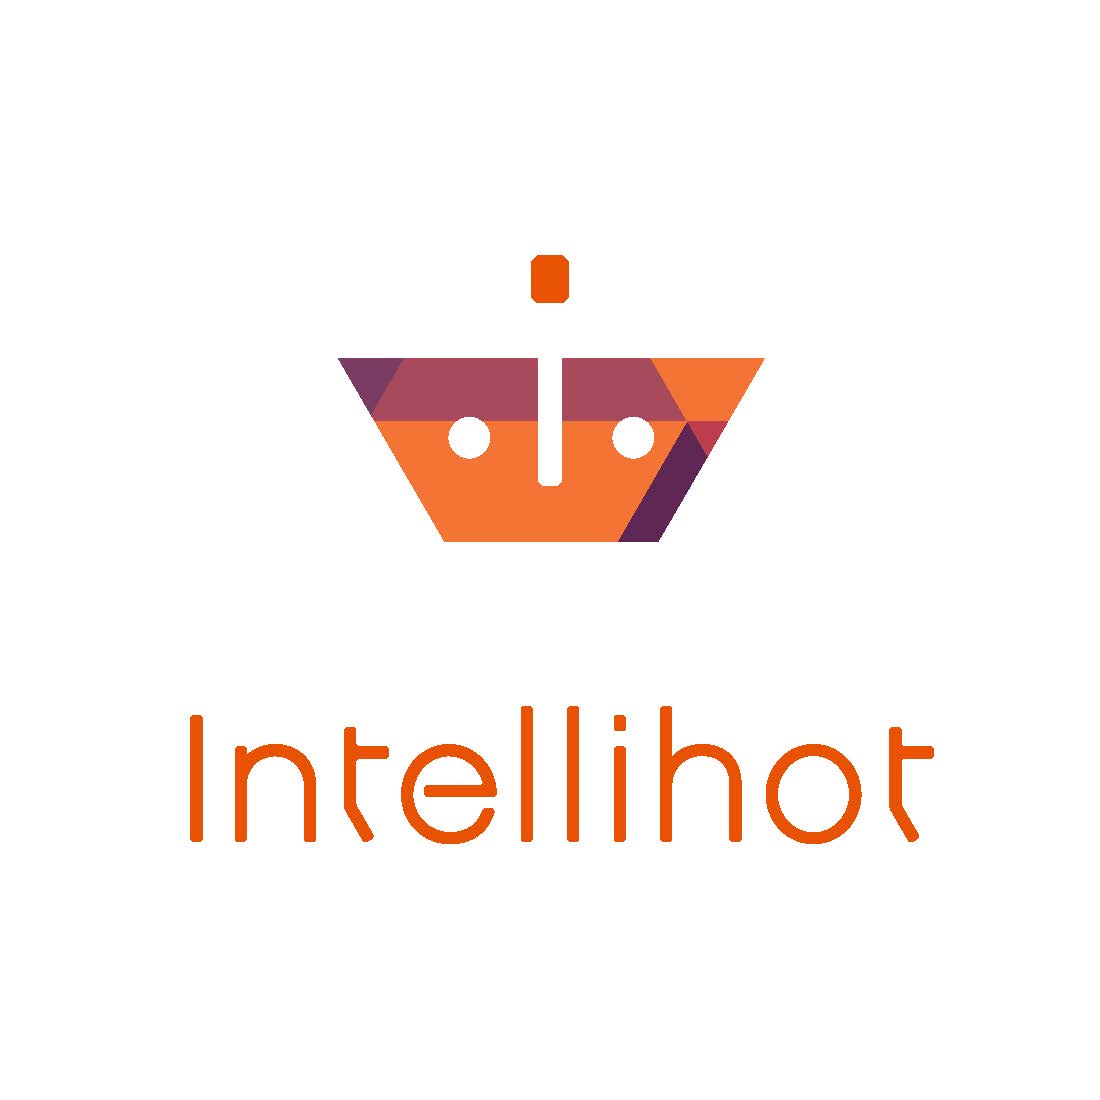 Intellihot logo.